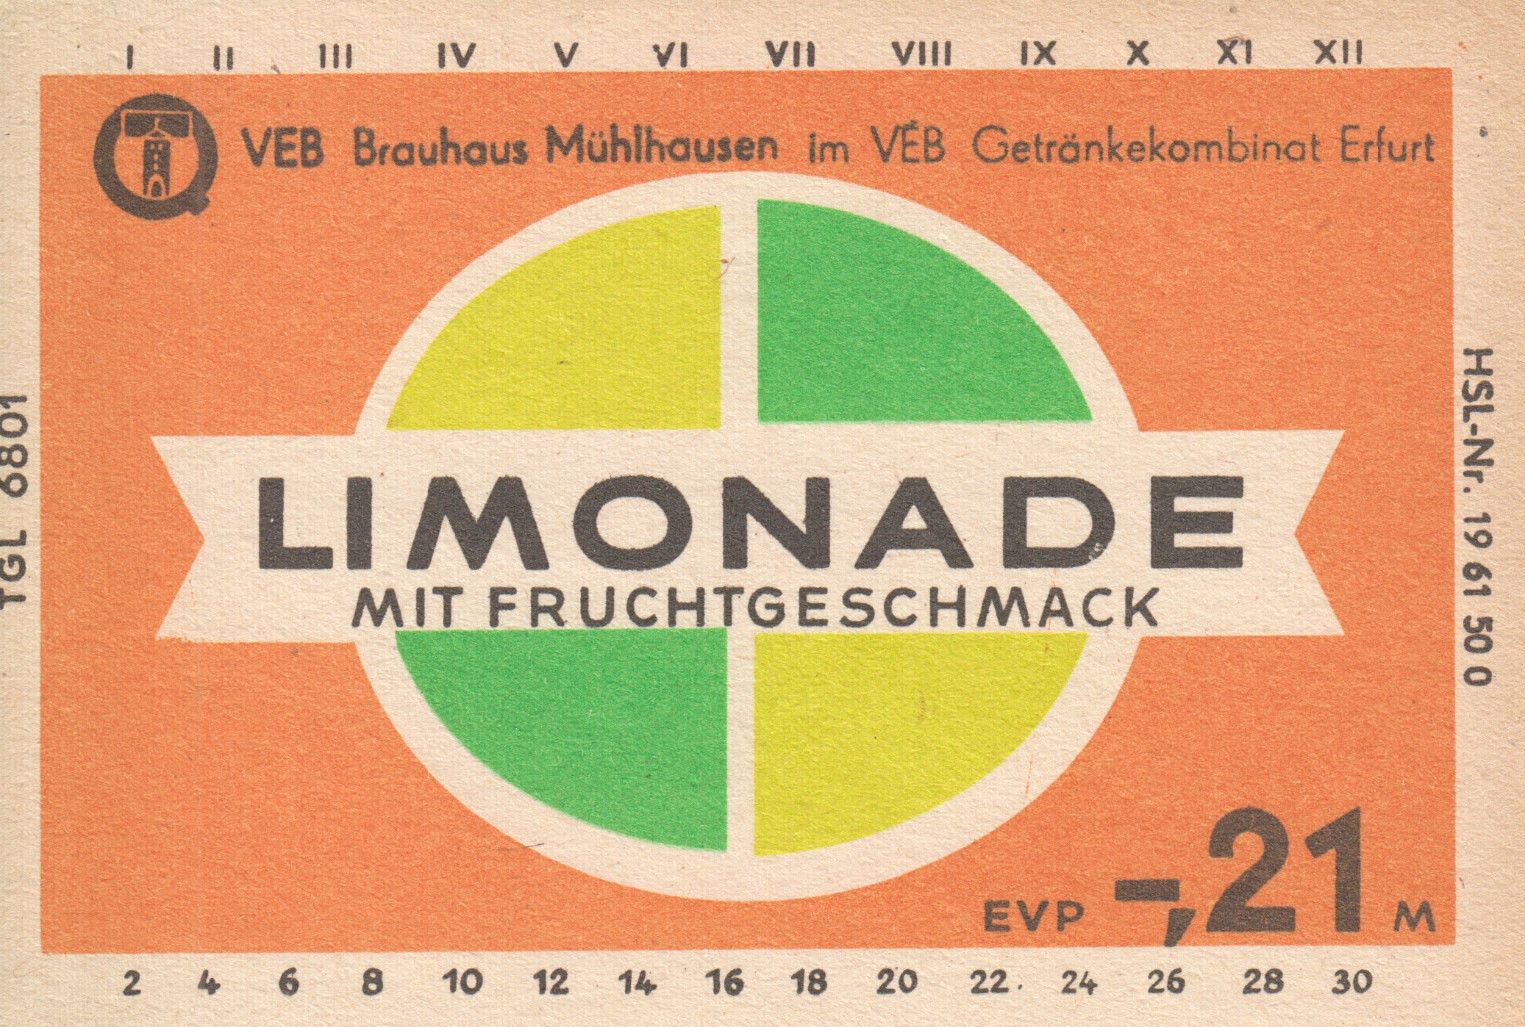 Limonade mit Fruchtgeschmack, VEB Brauhaus Mühlhausen (Bild: historisches Etikett)